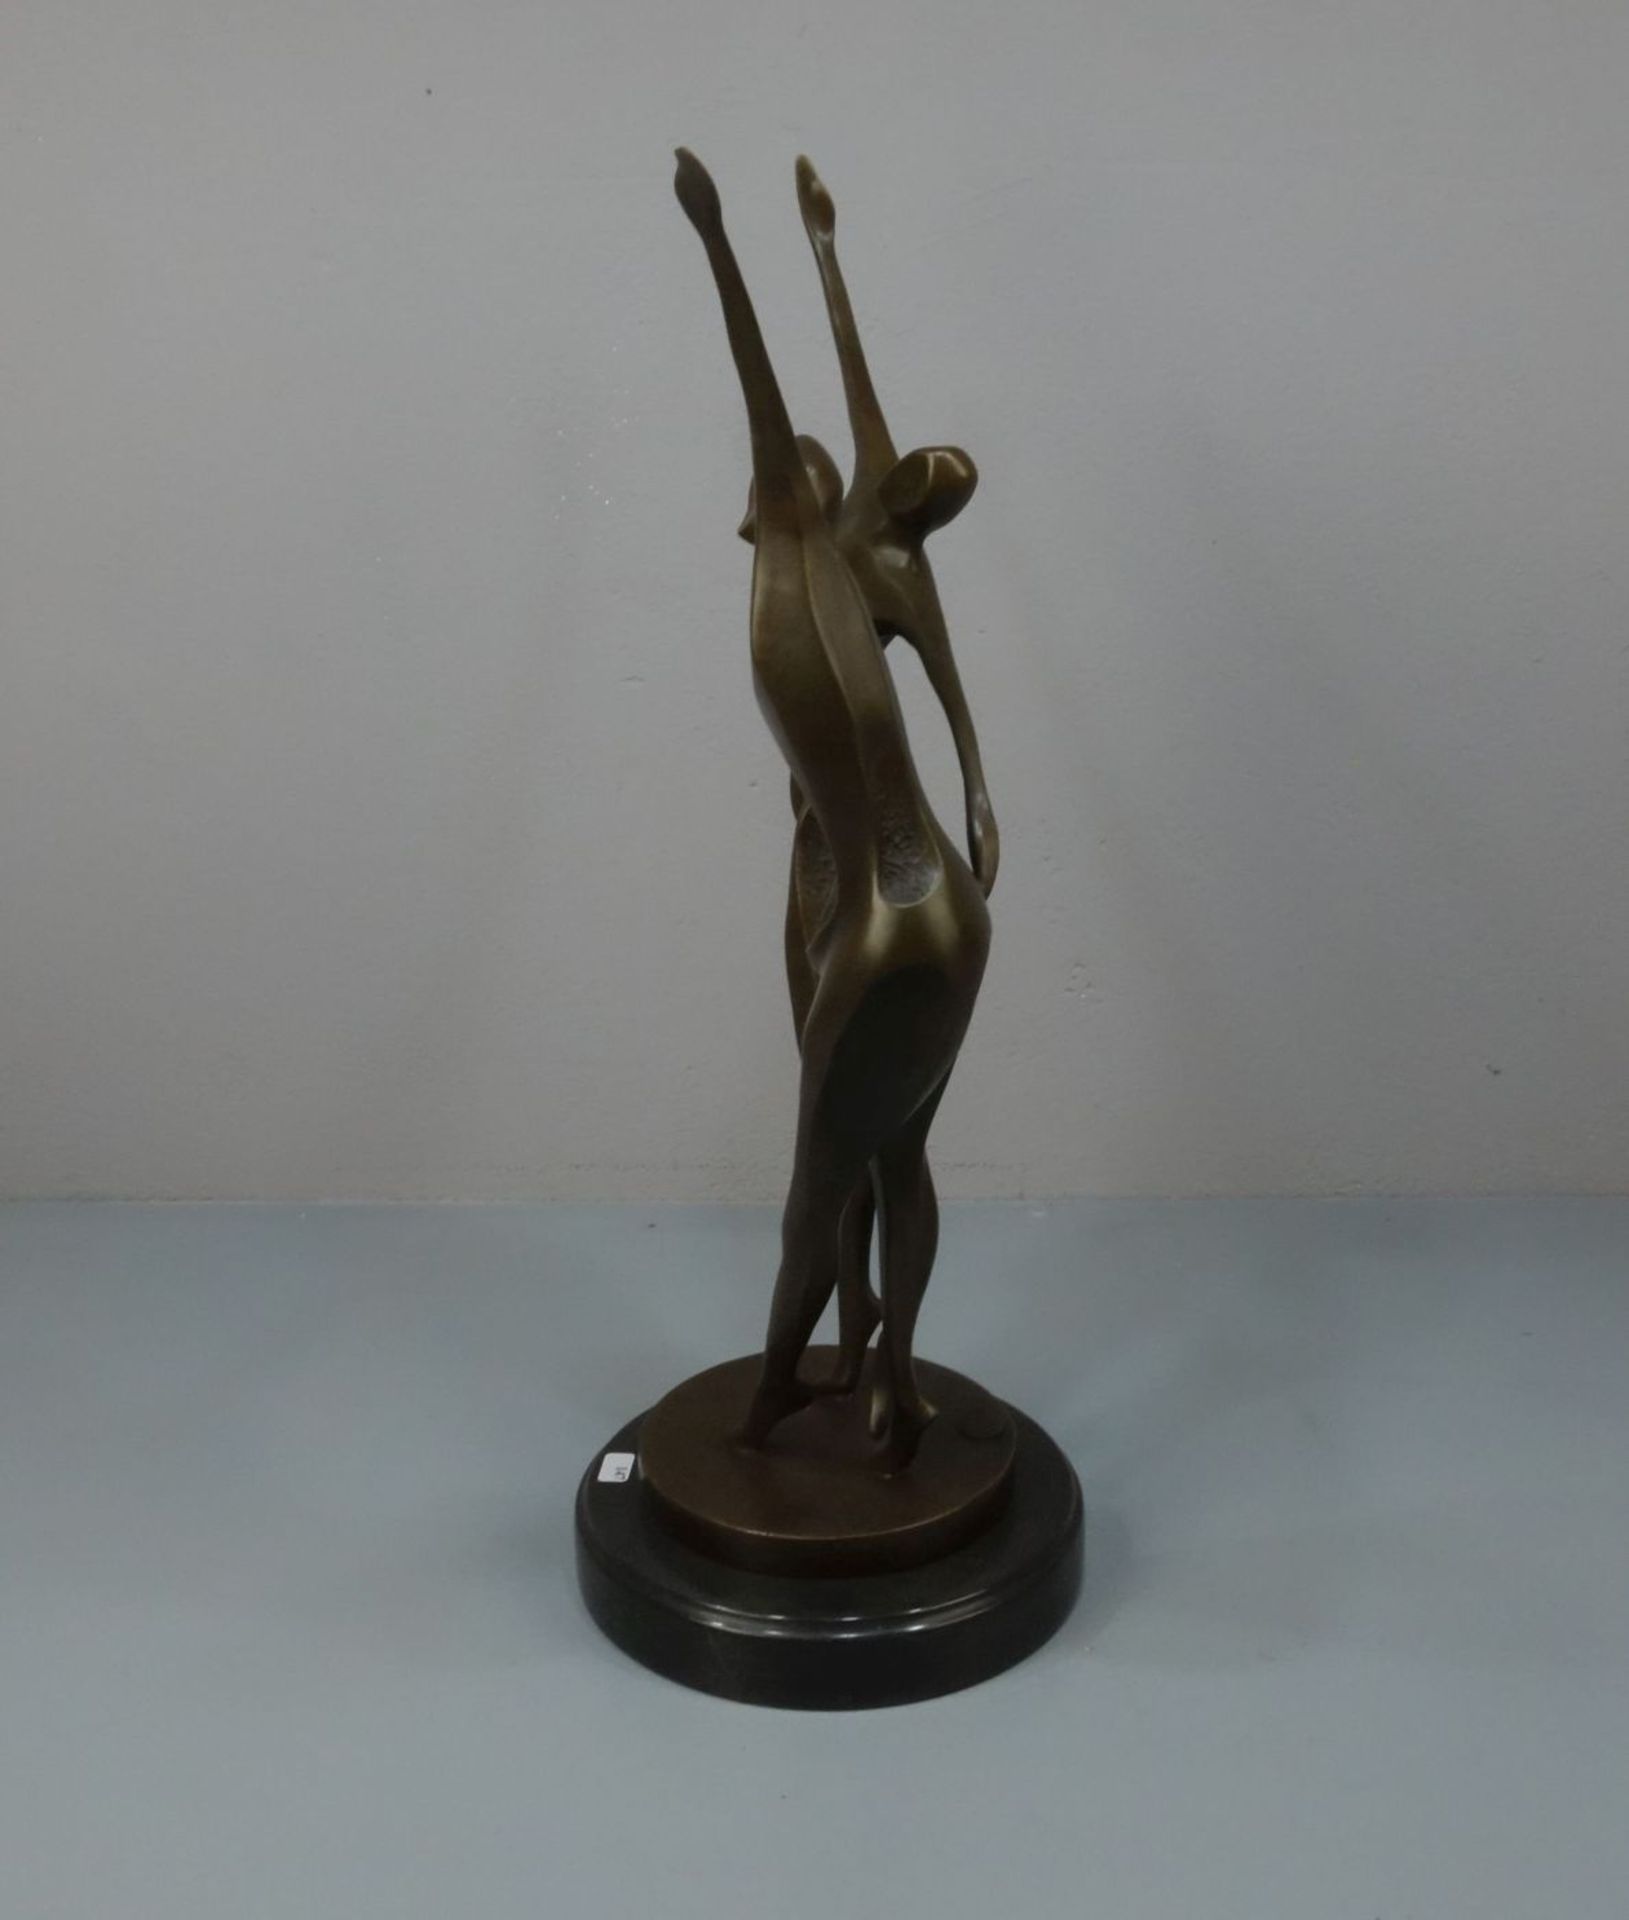 LOPEZ, MIGUEL FERNANDO (auch Milo, geb. 1955 in Lissabon), Skulptur / sculpture: "Tanzendes Paar", - Bild 2 aus 6